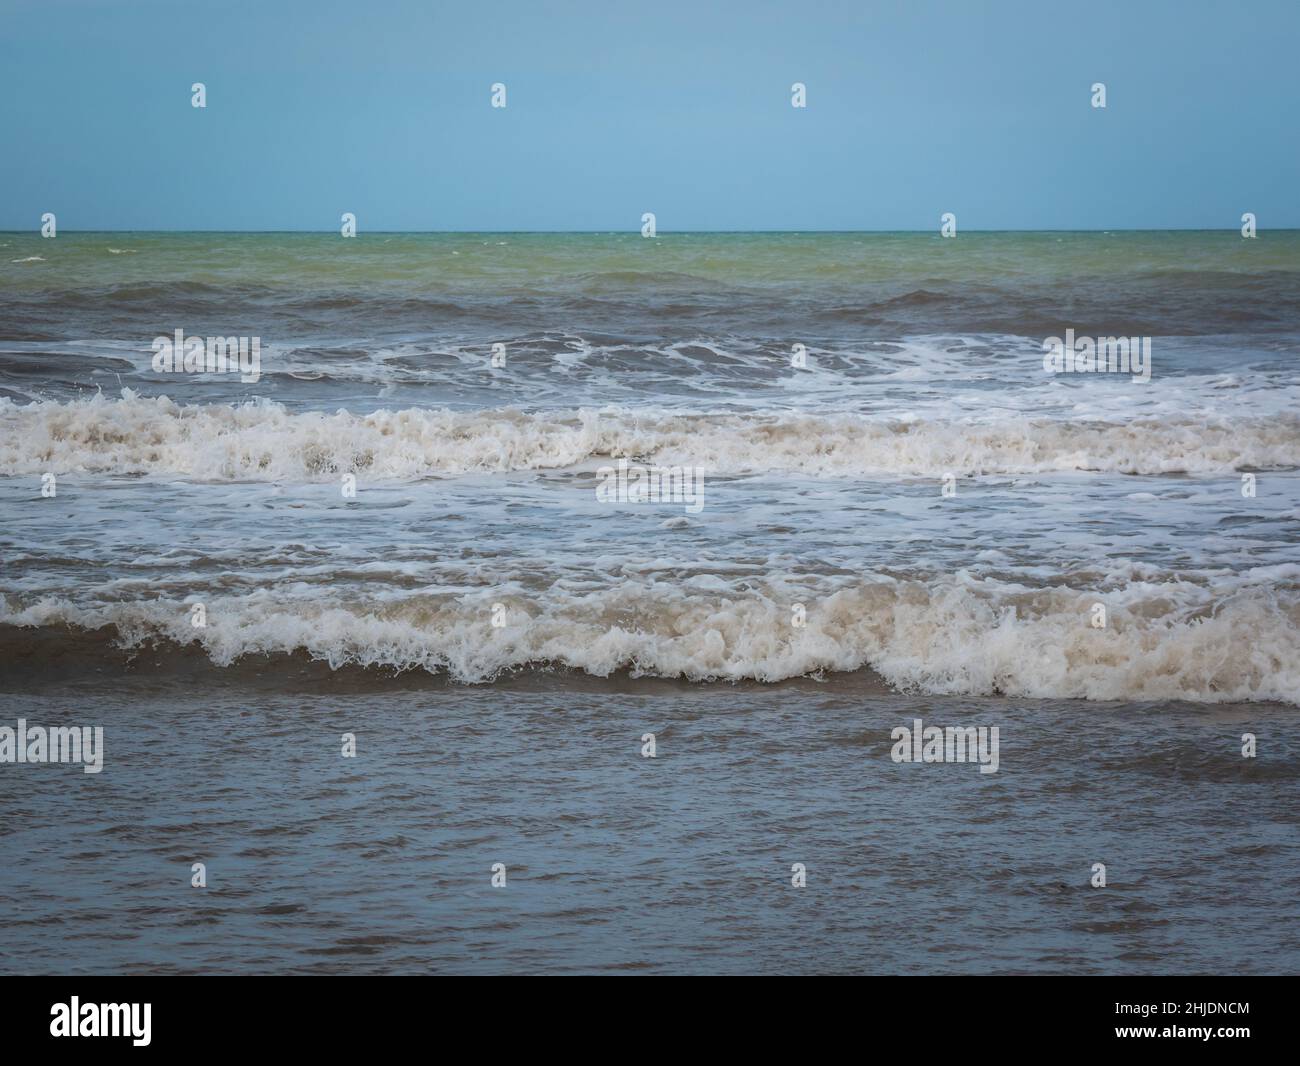 Plume blanche connue sous le nom de mousse de mer, d'océan ou de plage créée par l'agitation de l'eau de mer à Palomino, Dibulla, la Guajira, Colombie Banque D'Images